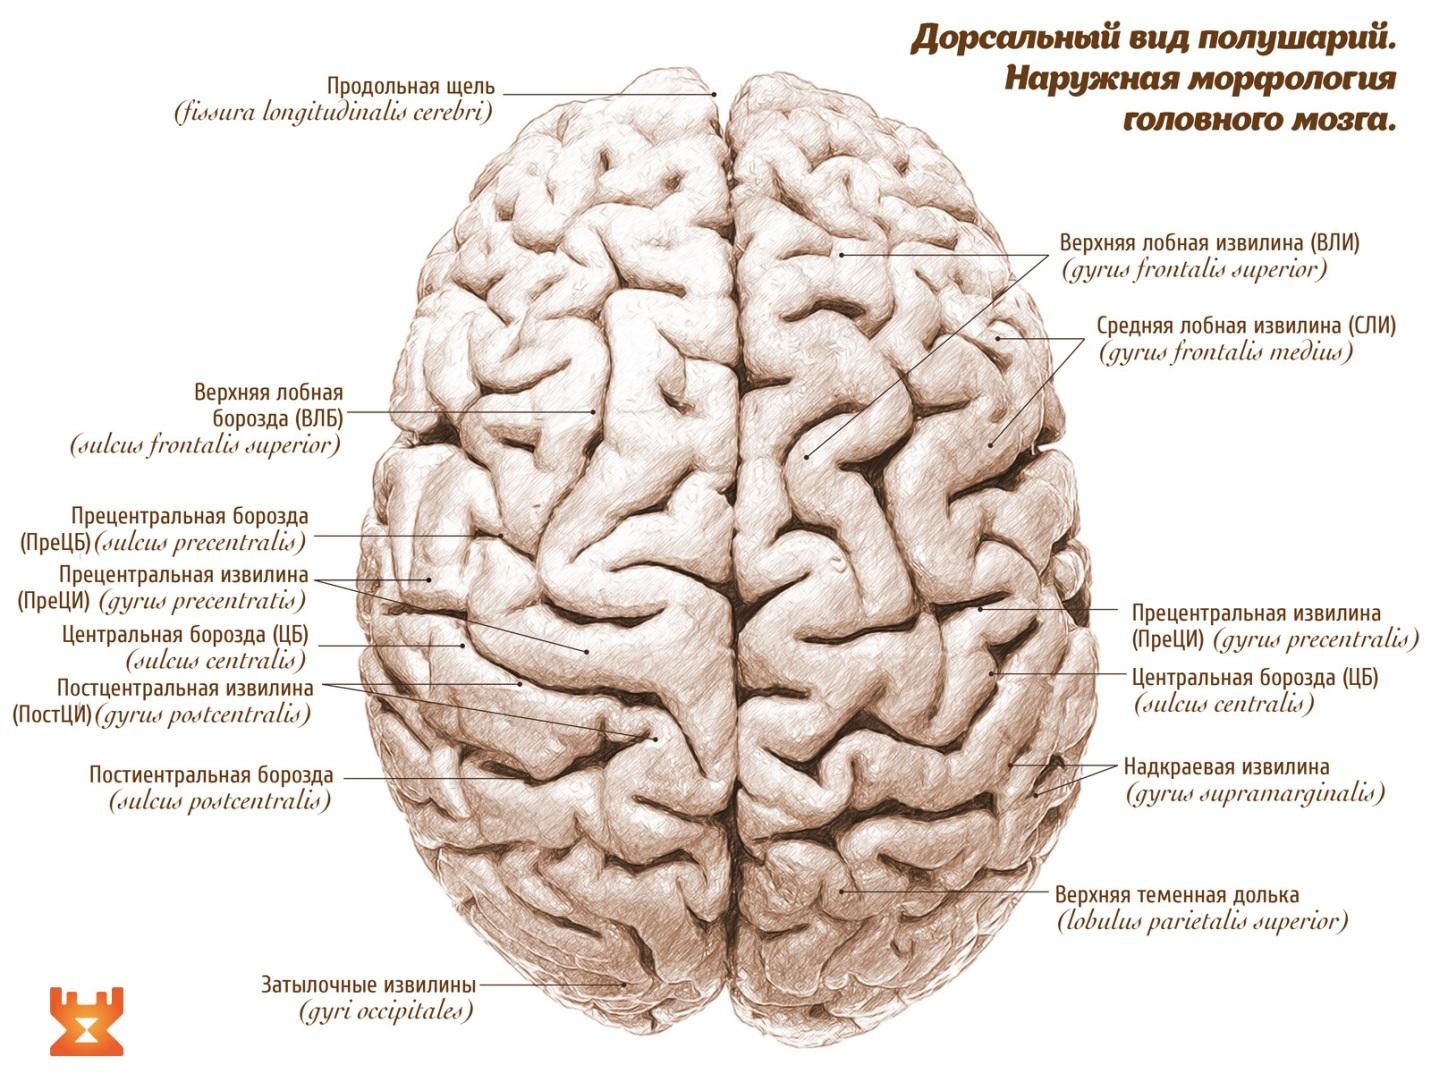 Борозды и извилины мозга человека. Строение мозга извилины. Борозды и извилины головного мозга анатомия. Головной мозг анатомия человека борозды и извилины. Извилины и борозды головного мозга схема.